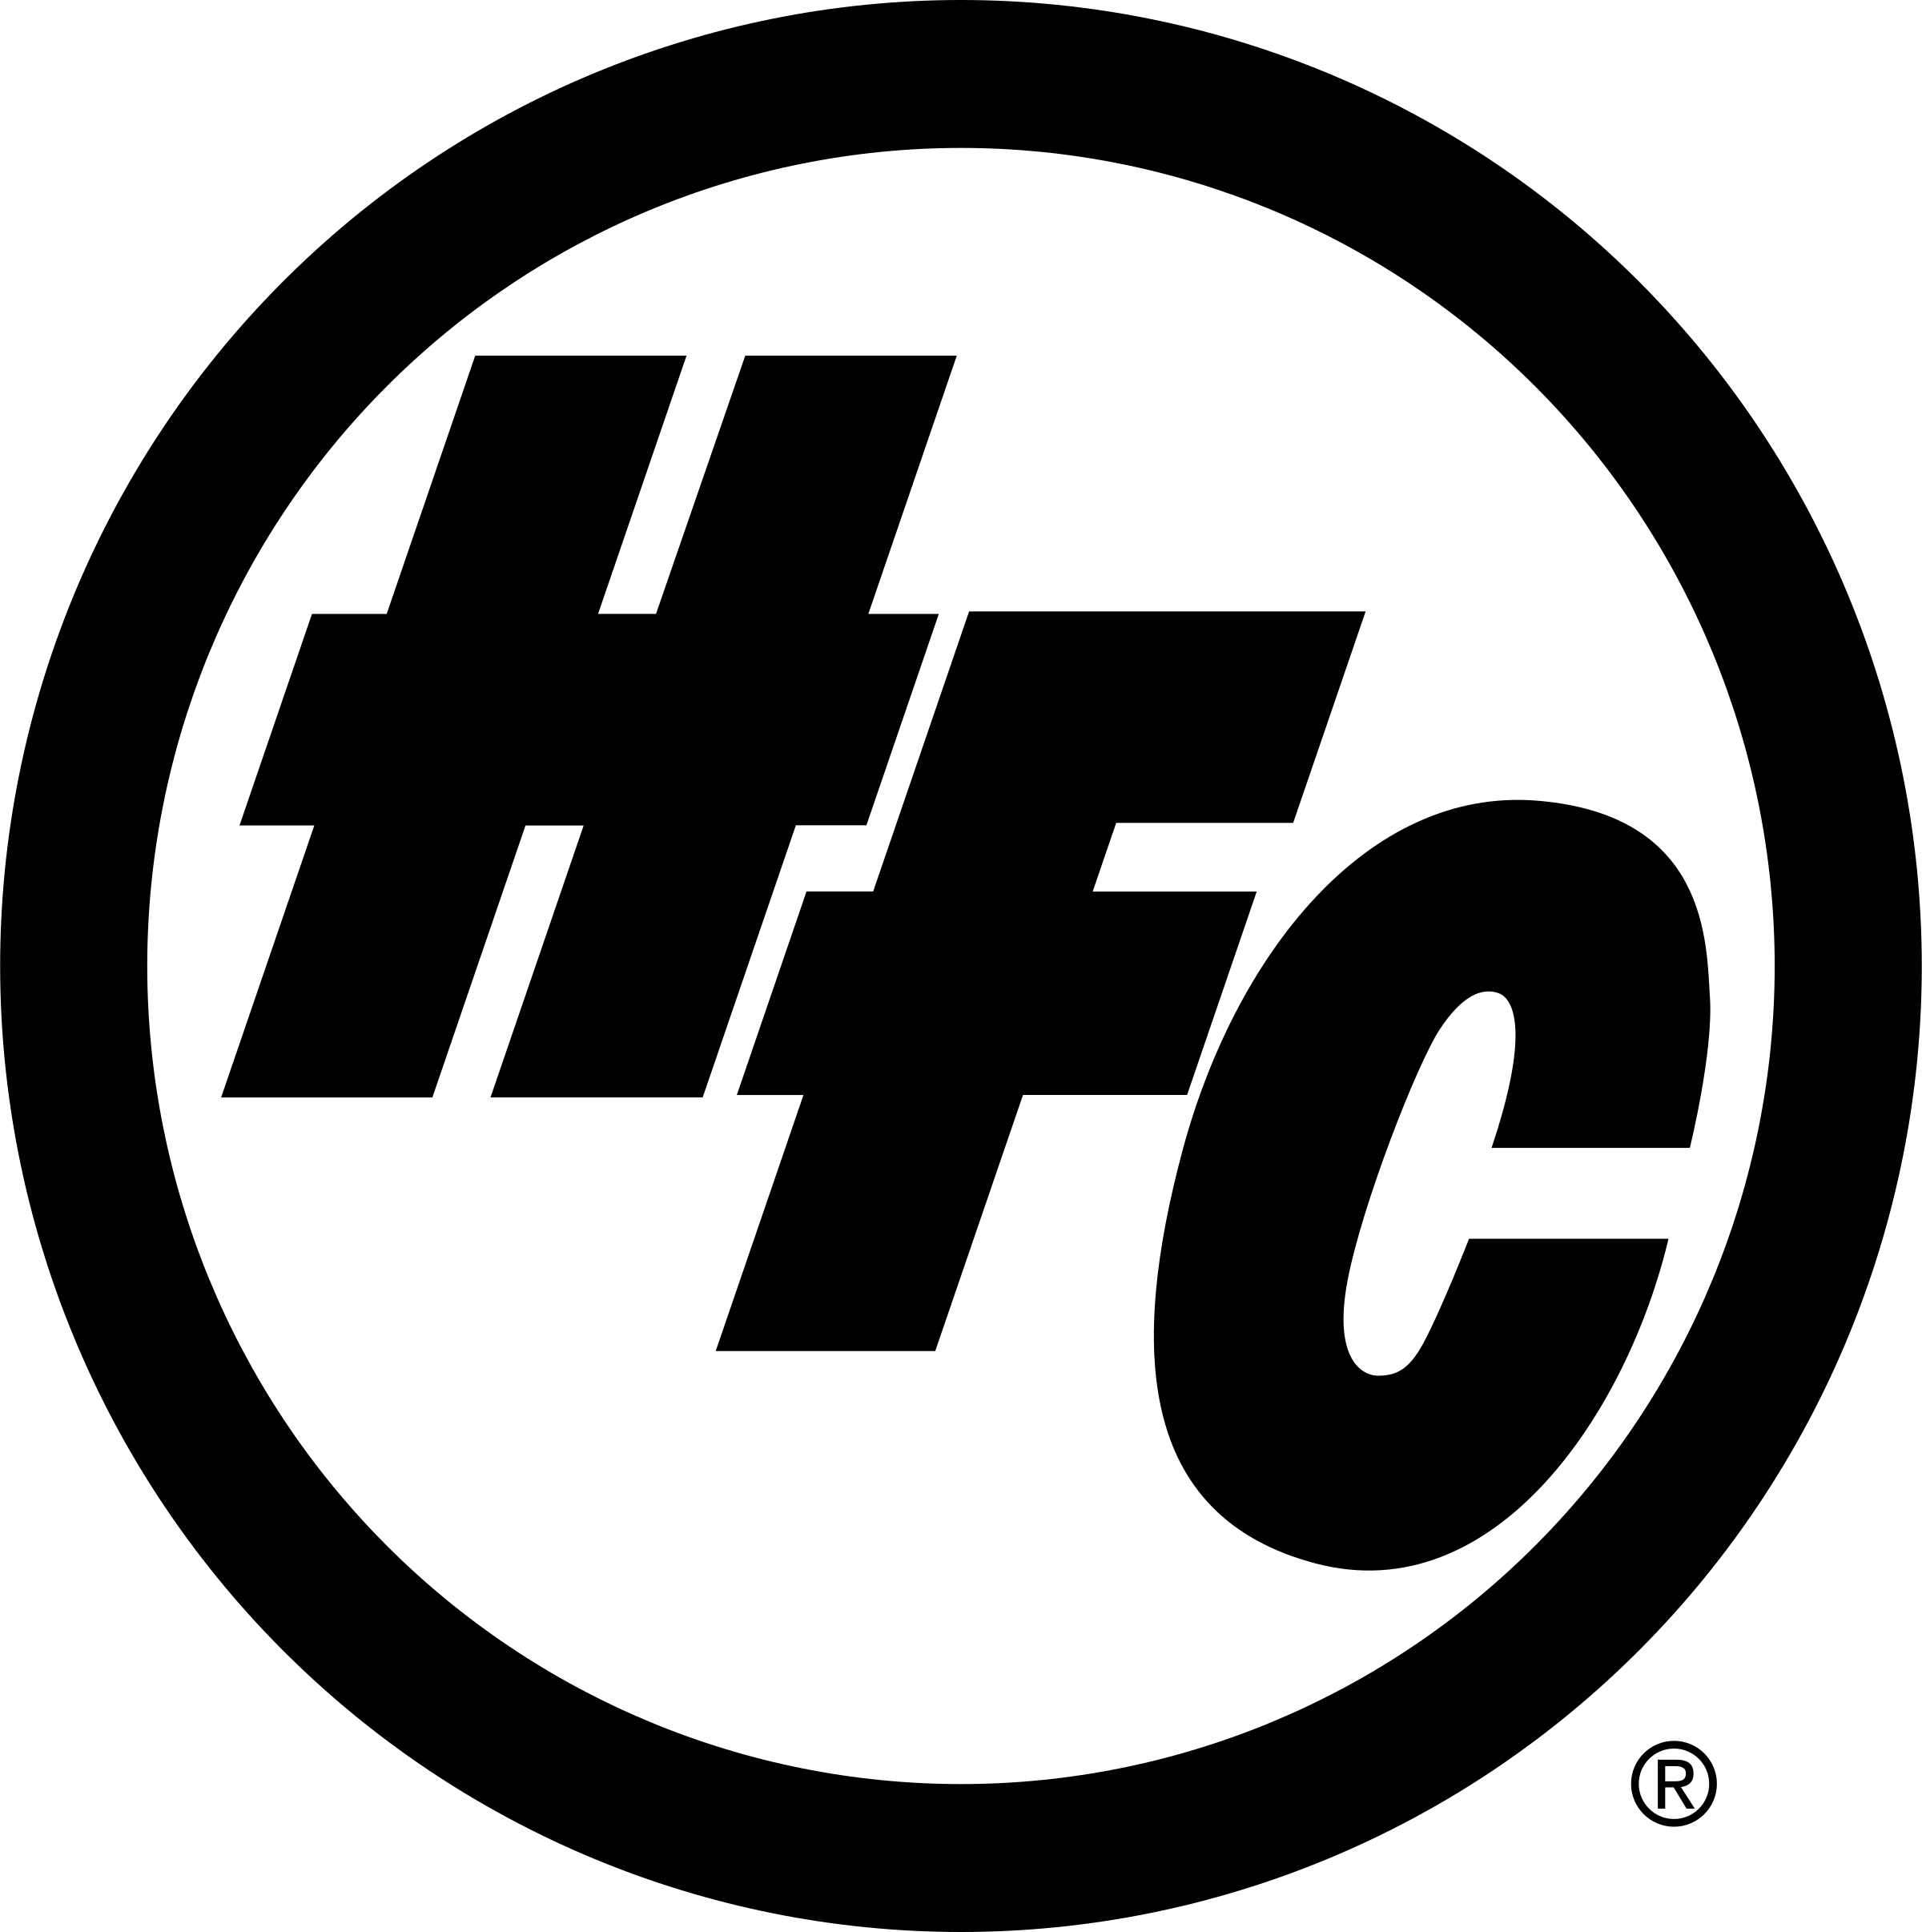 HFC Logo - HFC Logo PNG Transparent & SVG Vector - Freebie Supply